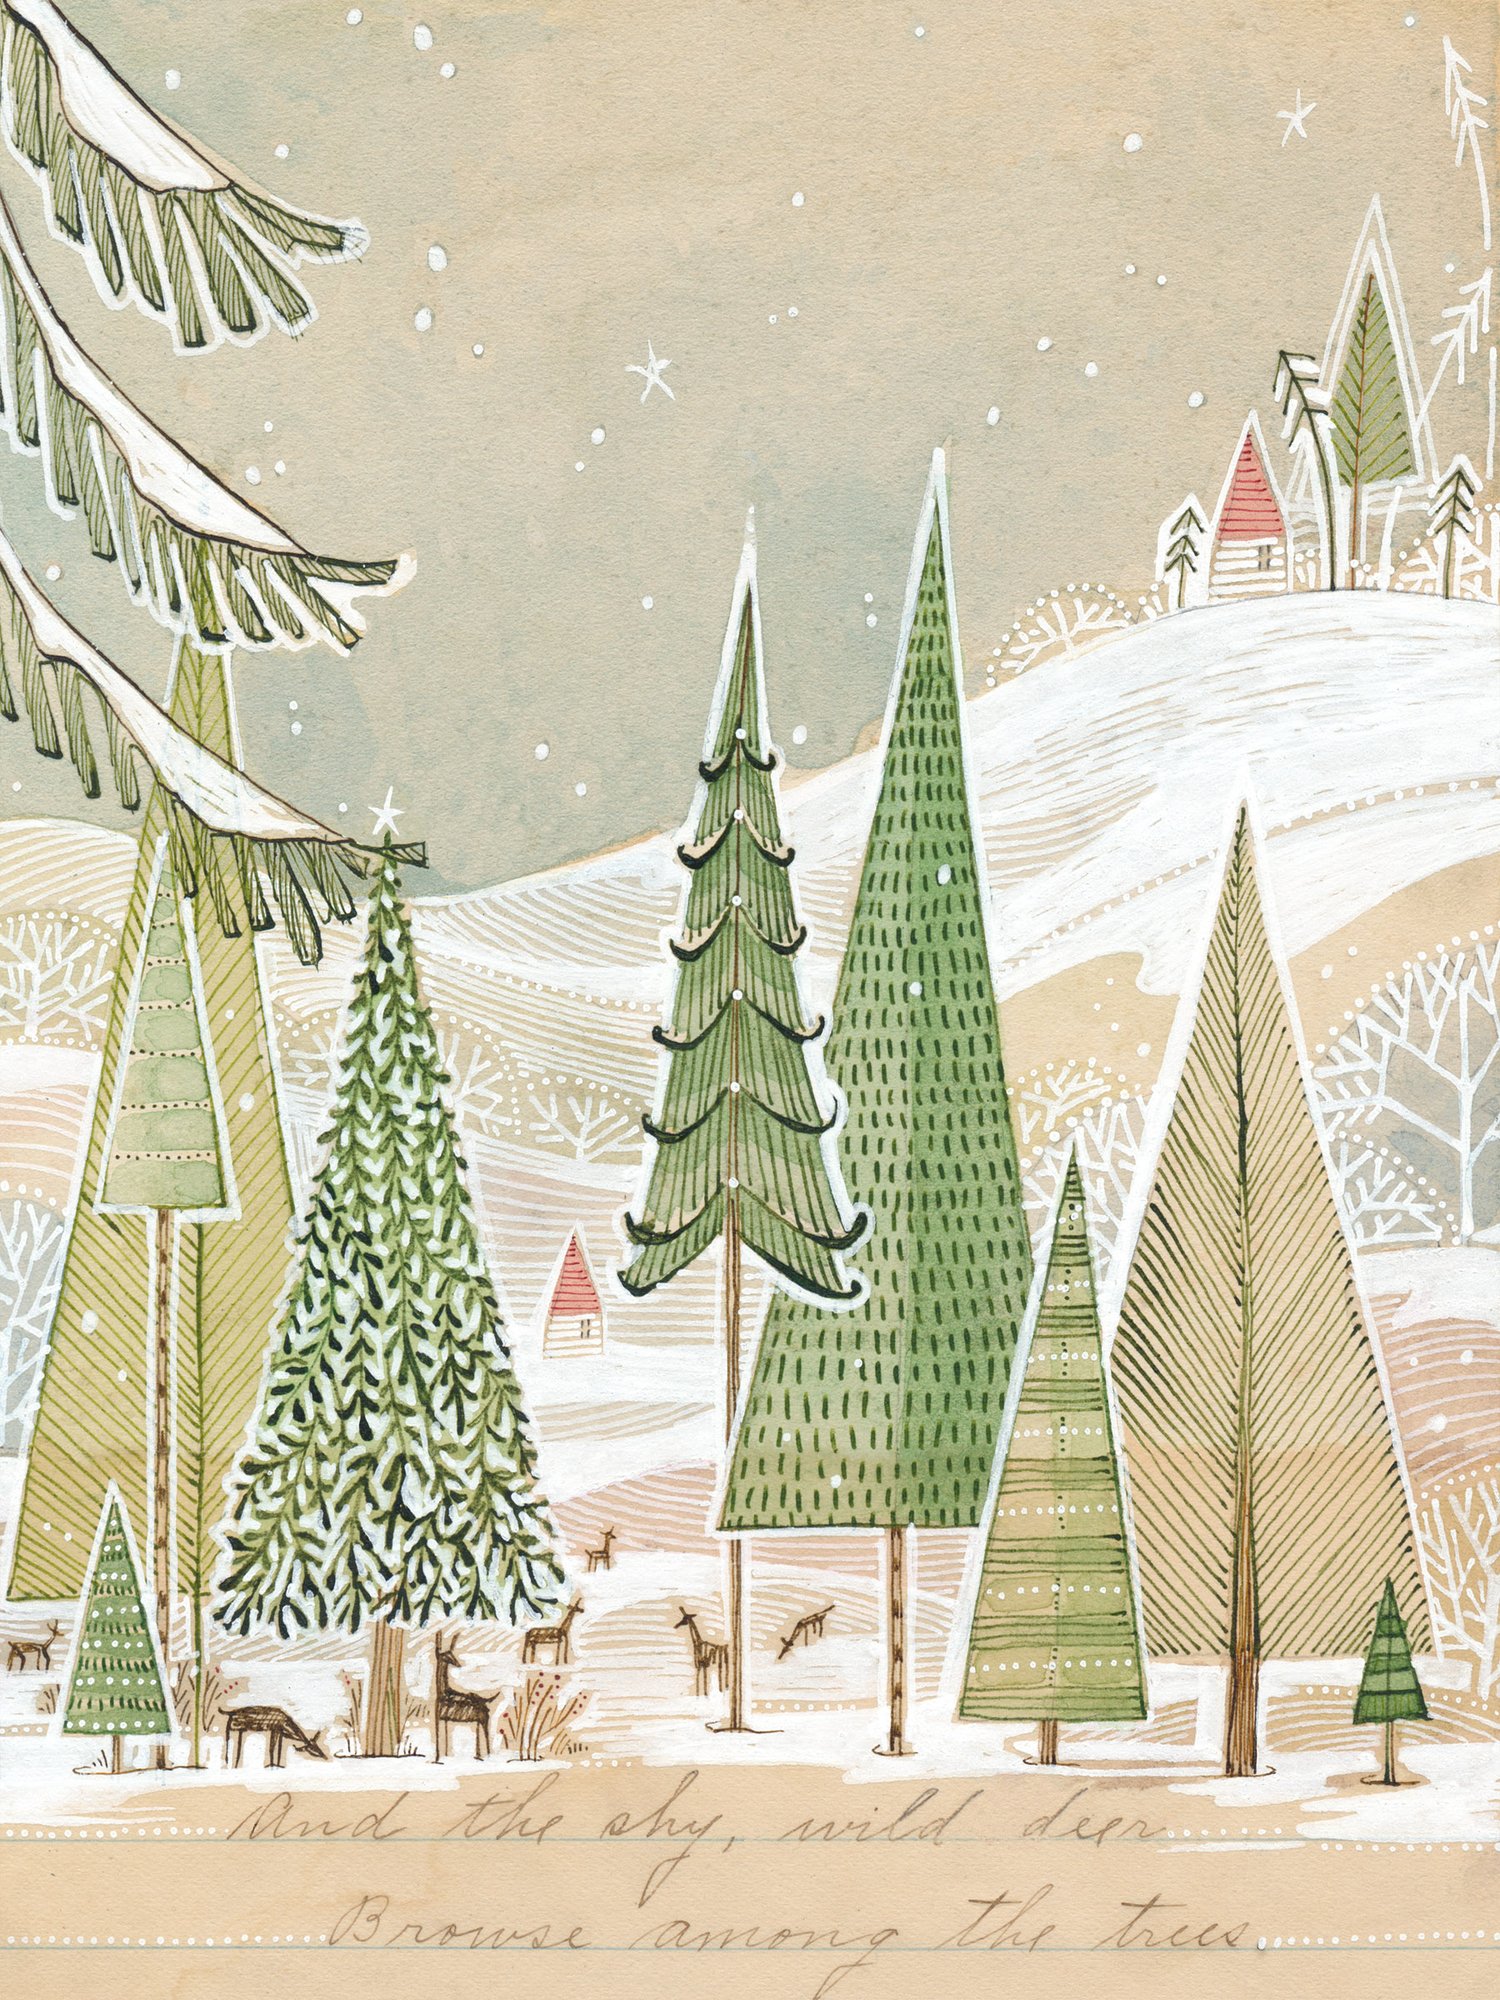 Image of Landscape of Winter Scene, by cori dantini